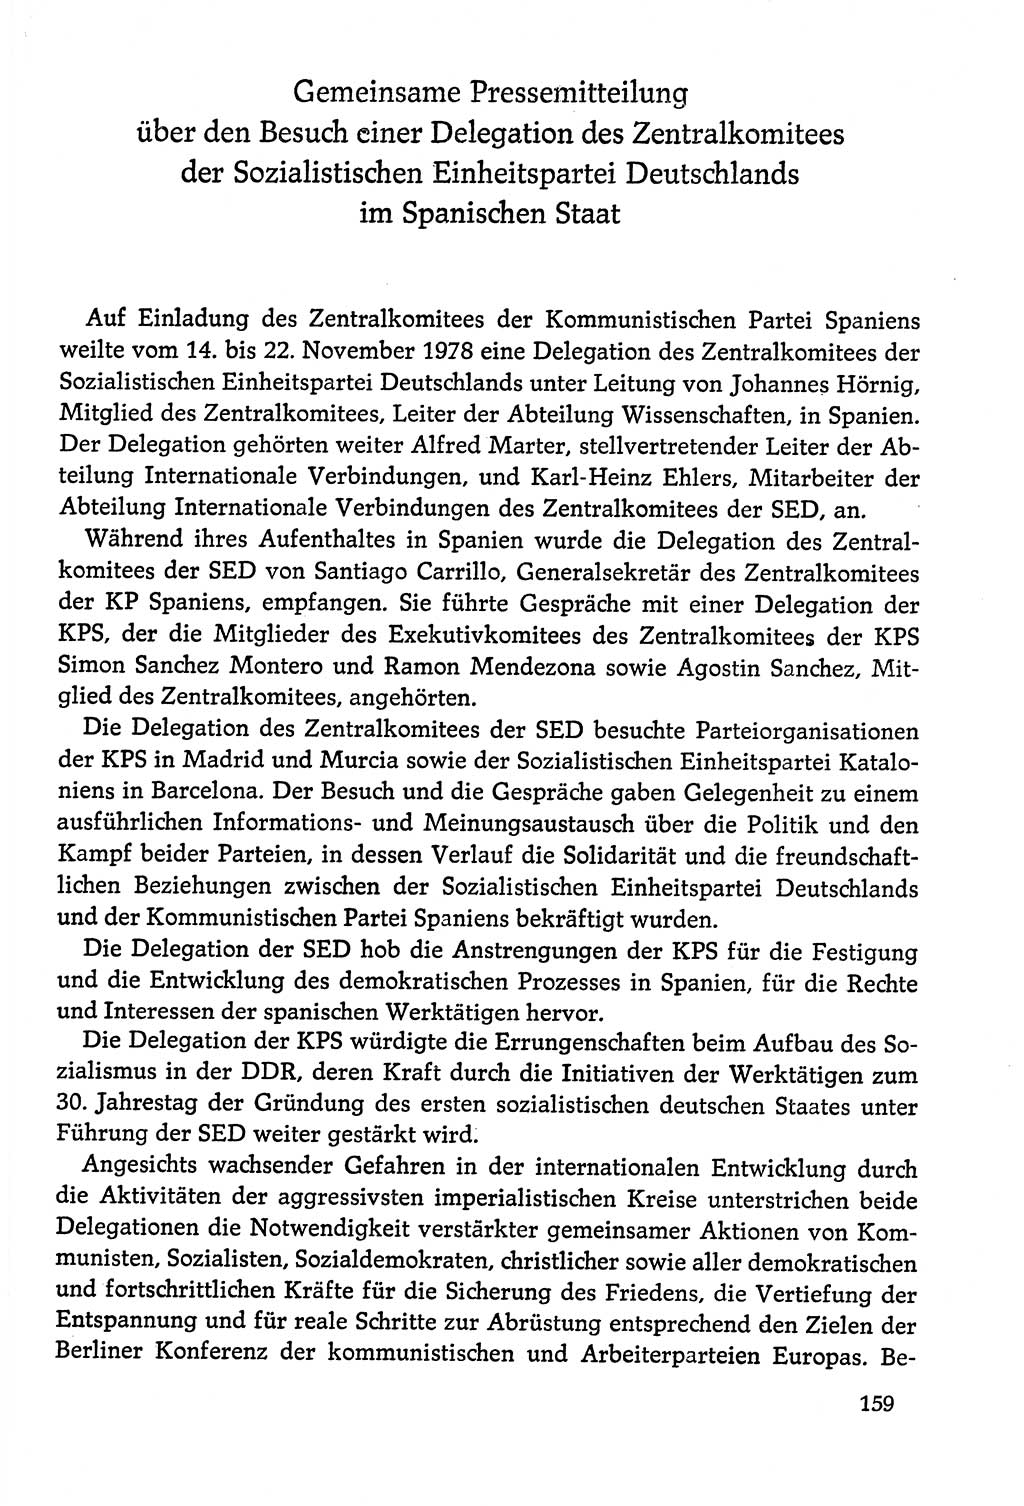 Dokumente der Sozialistischen Einheitspartei Deutschlands (SED) [Deutsche Demokratische Republik (DDR)] 1978-1979, Seite 159 (Dok. SED DDR 1978-1979, S. 159)